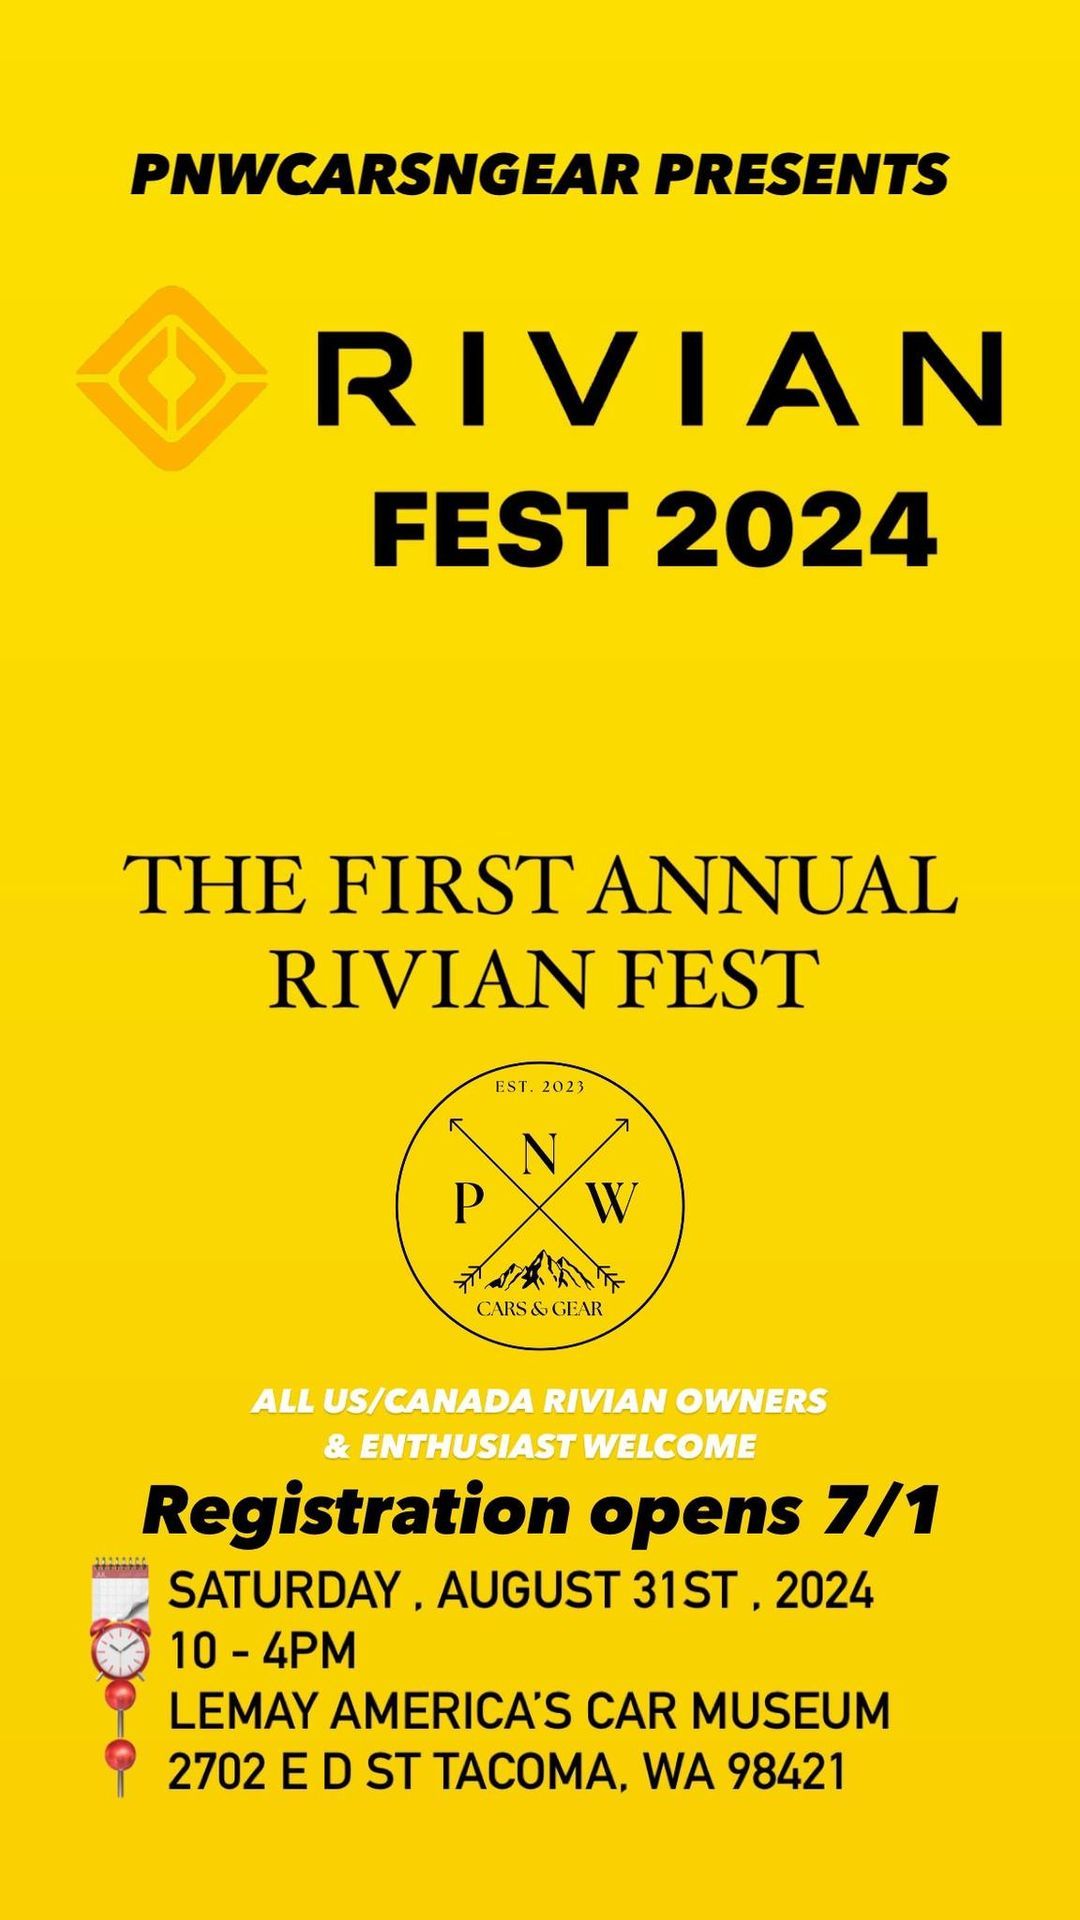 RIVIAN FEST 2024